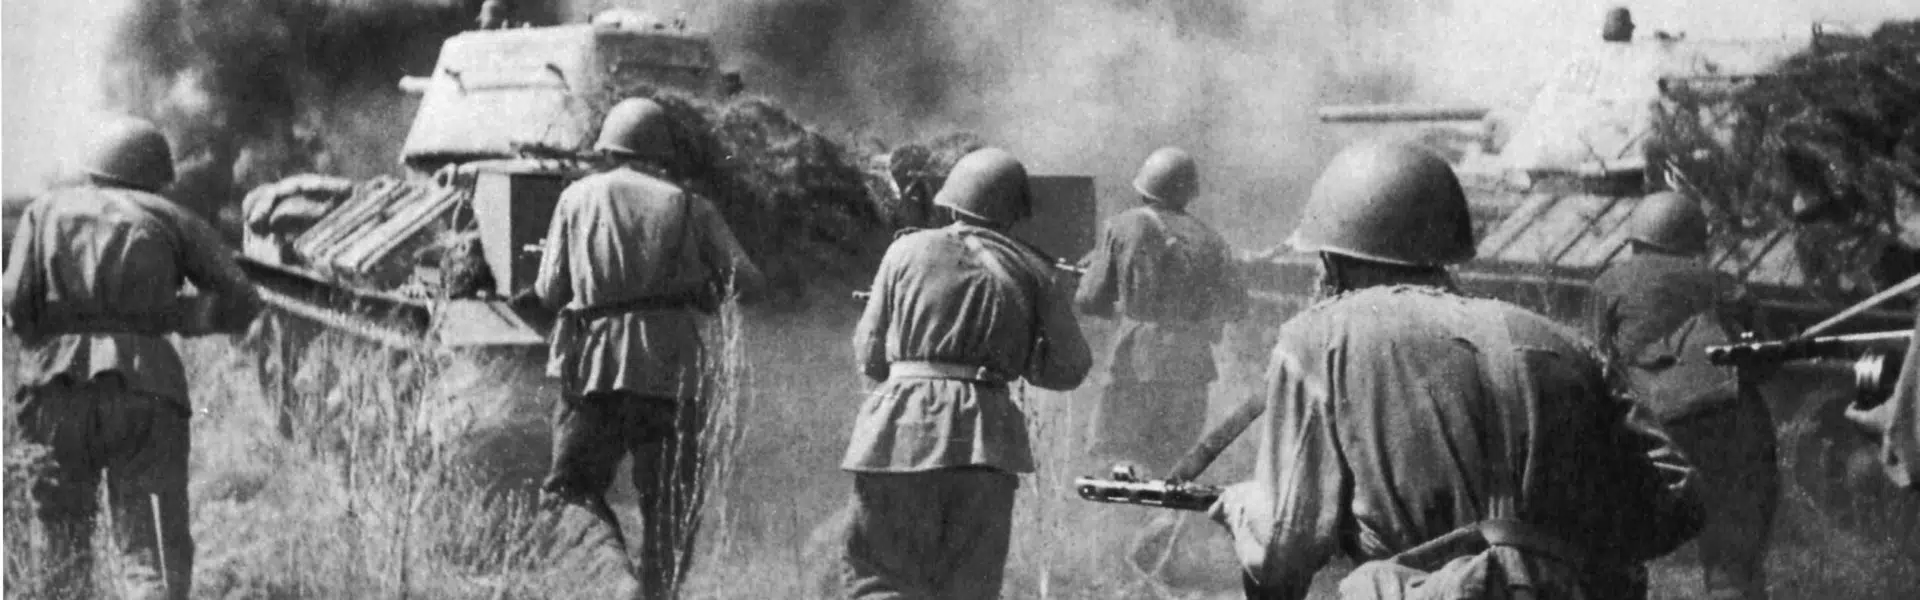 Slaget vid Kursk 1943